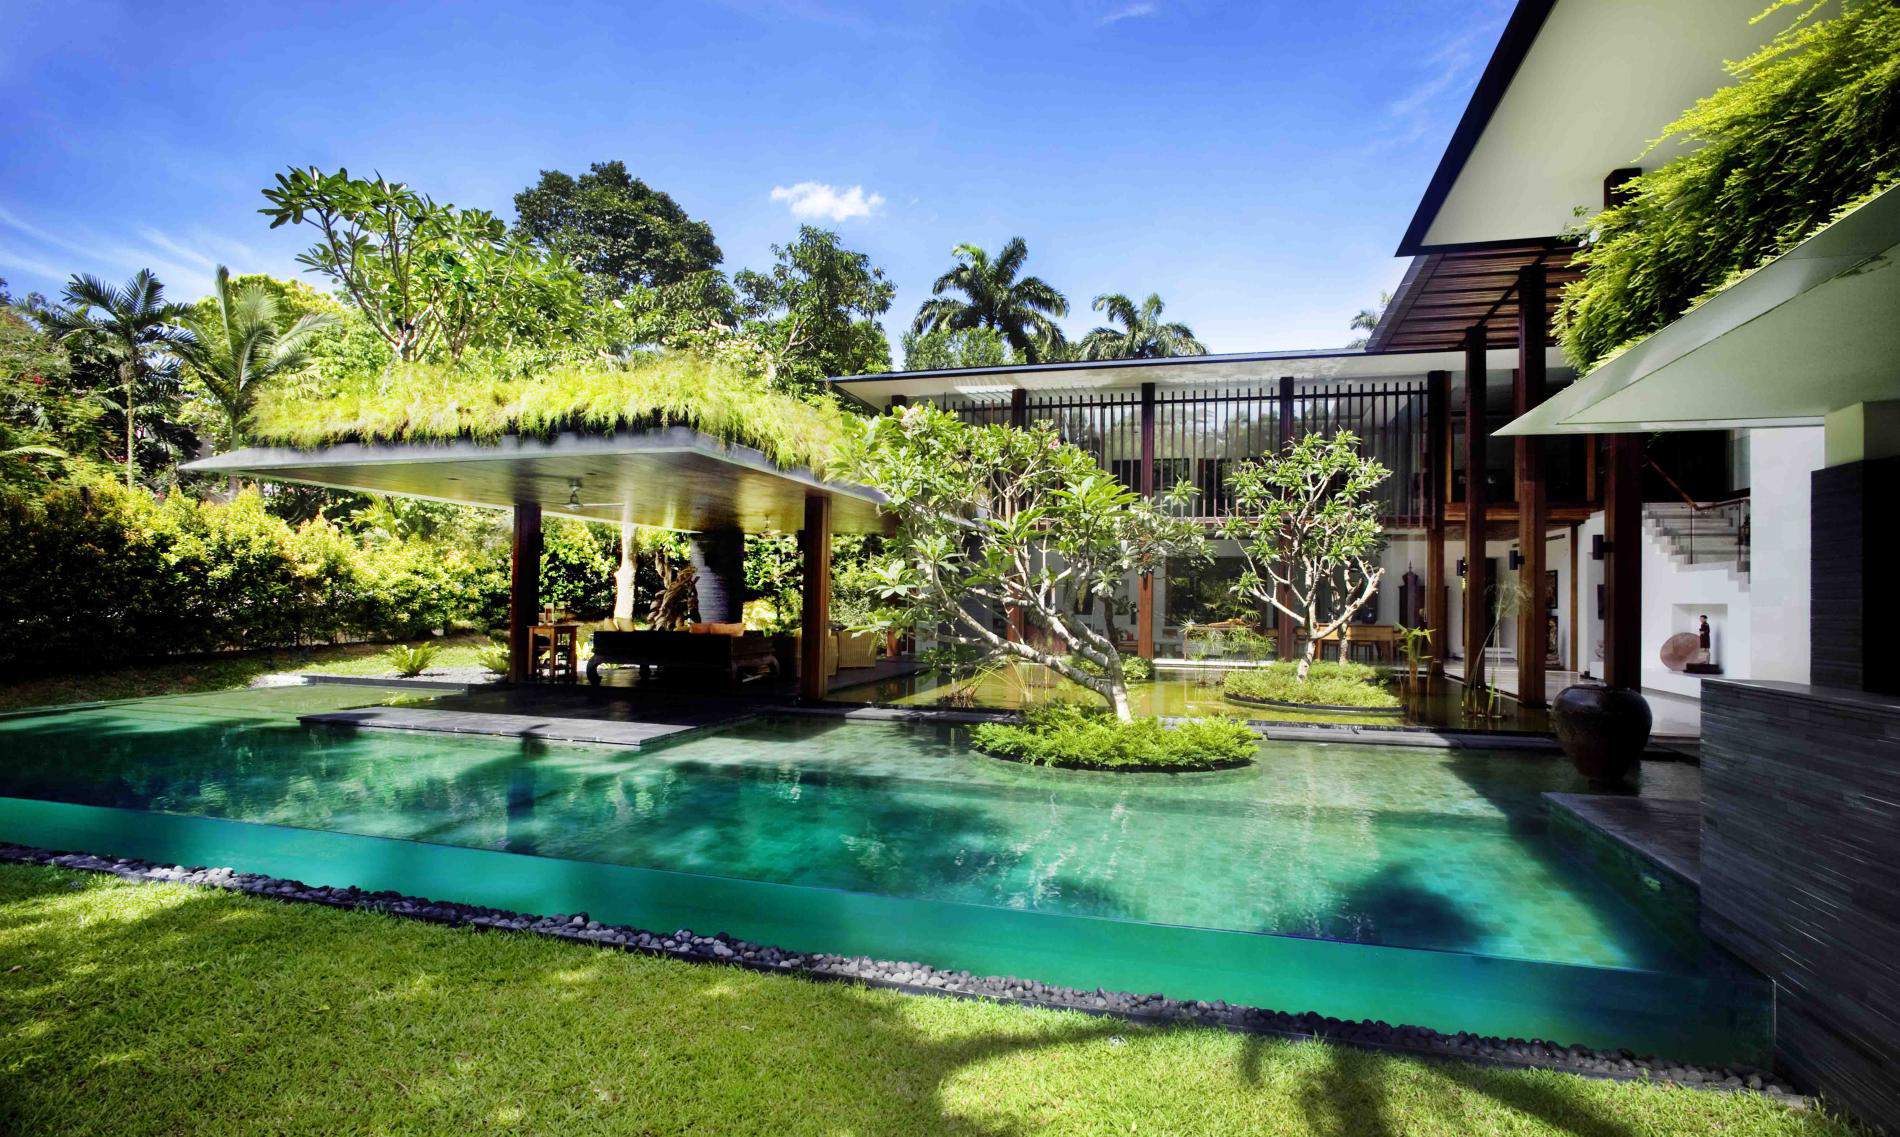 Contemporary Tropical House Roof Garden Idea